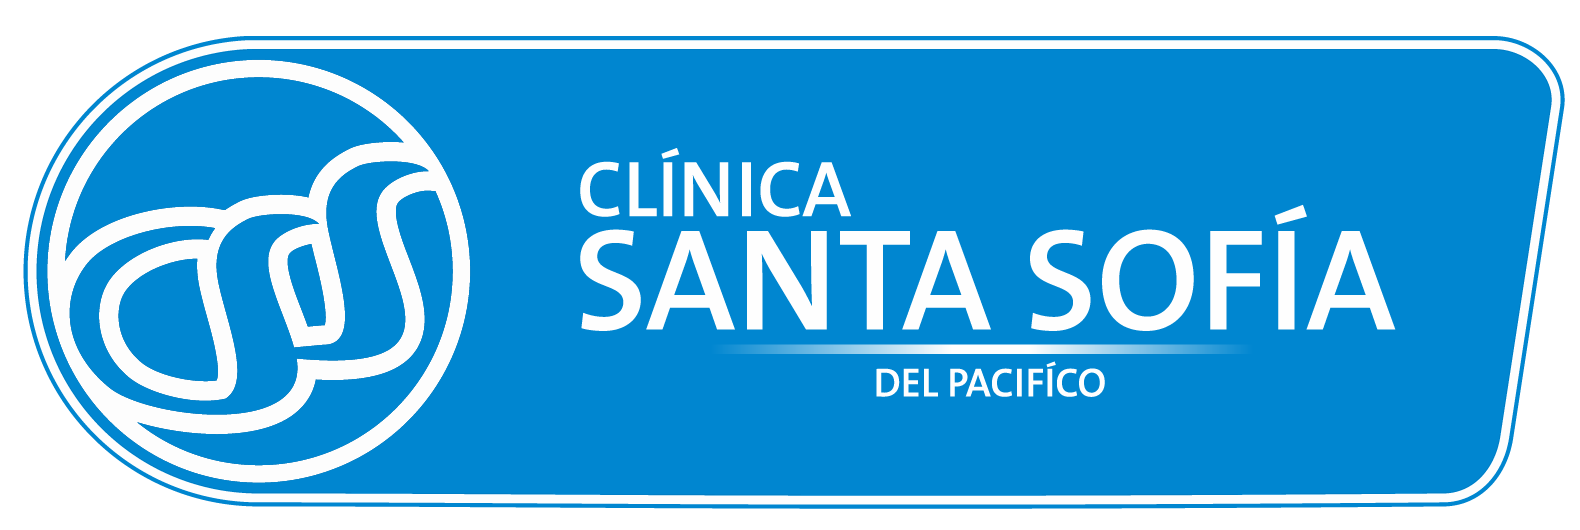 clinica-santa-sofia-logo